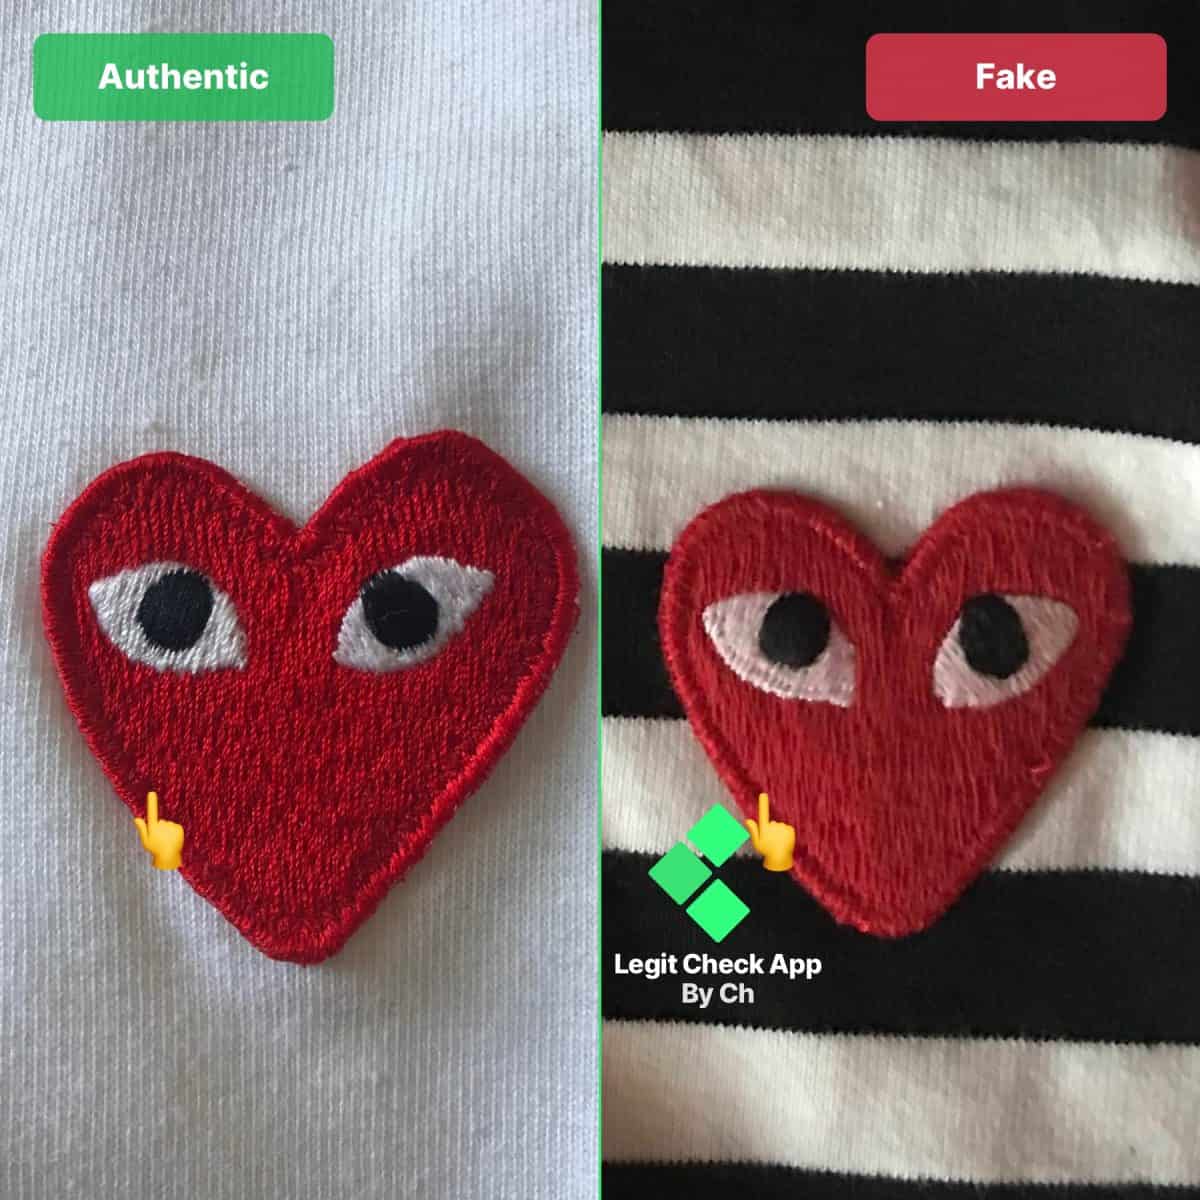 CDG Red Heart Colour fake vs rela